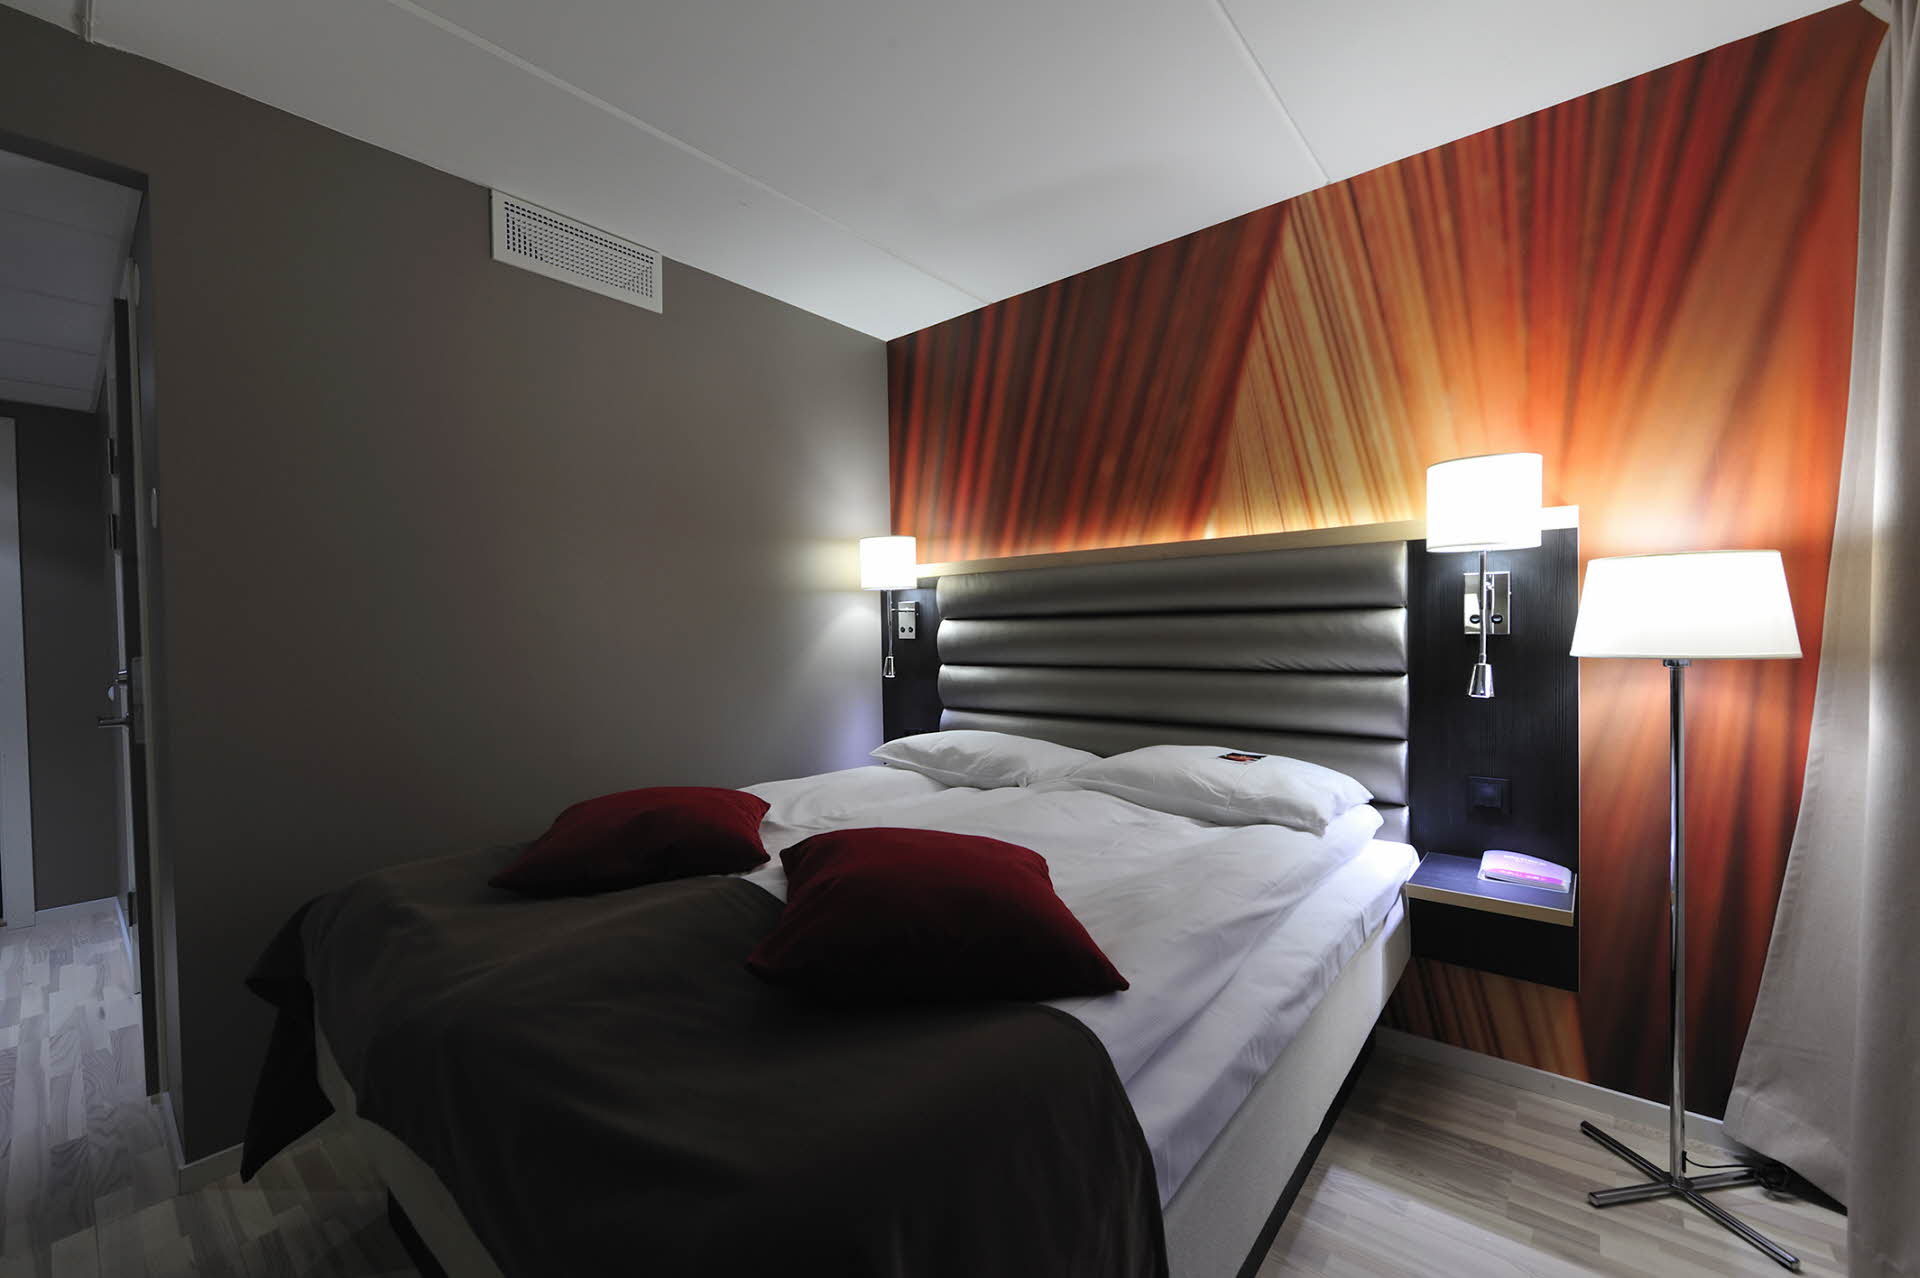 Doppelbett, Lampen, eine bunte Wand und rote Zierkissen. 